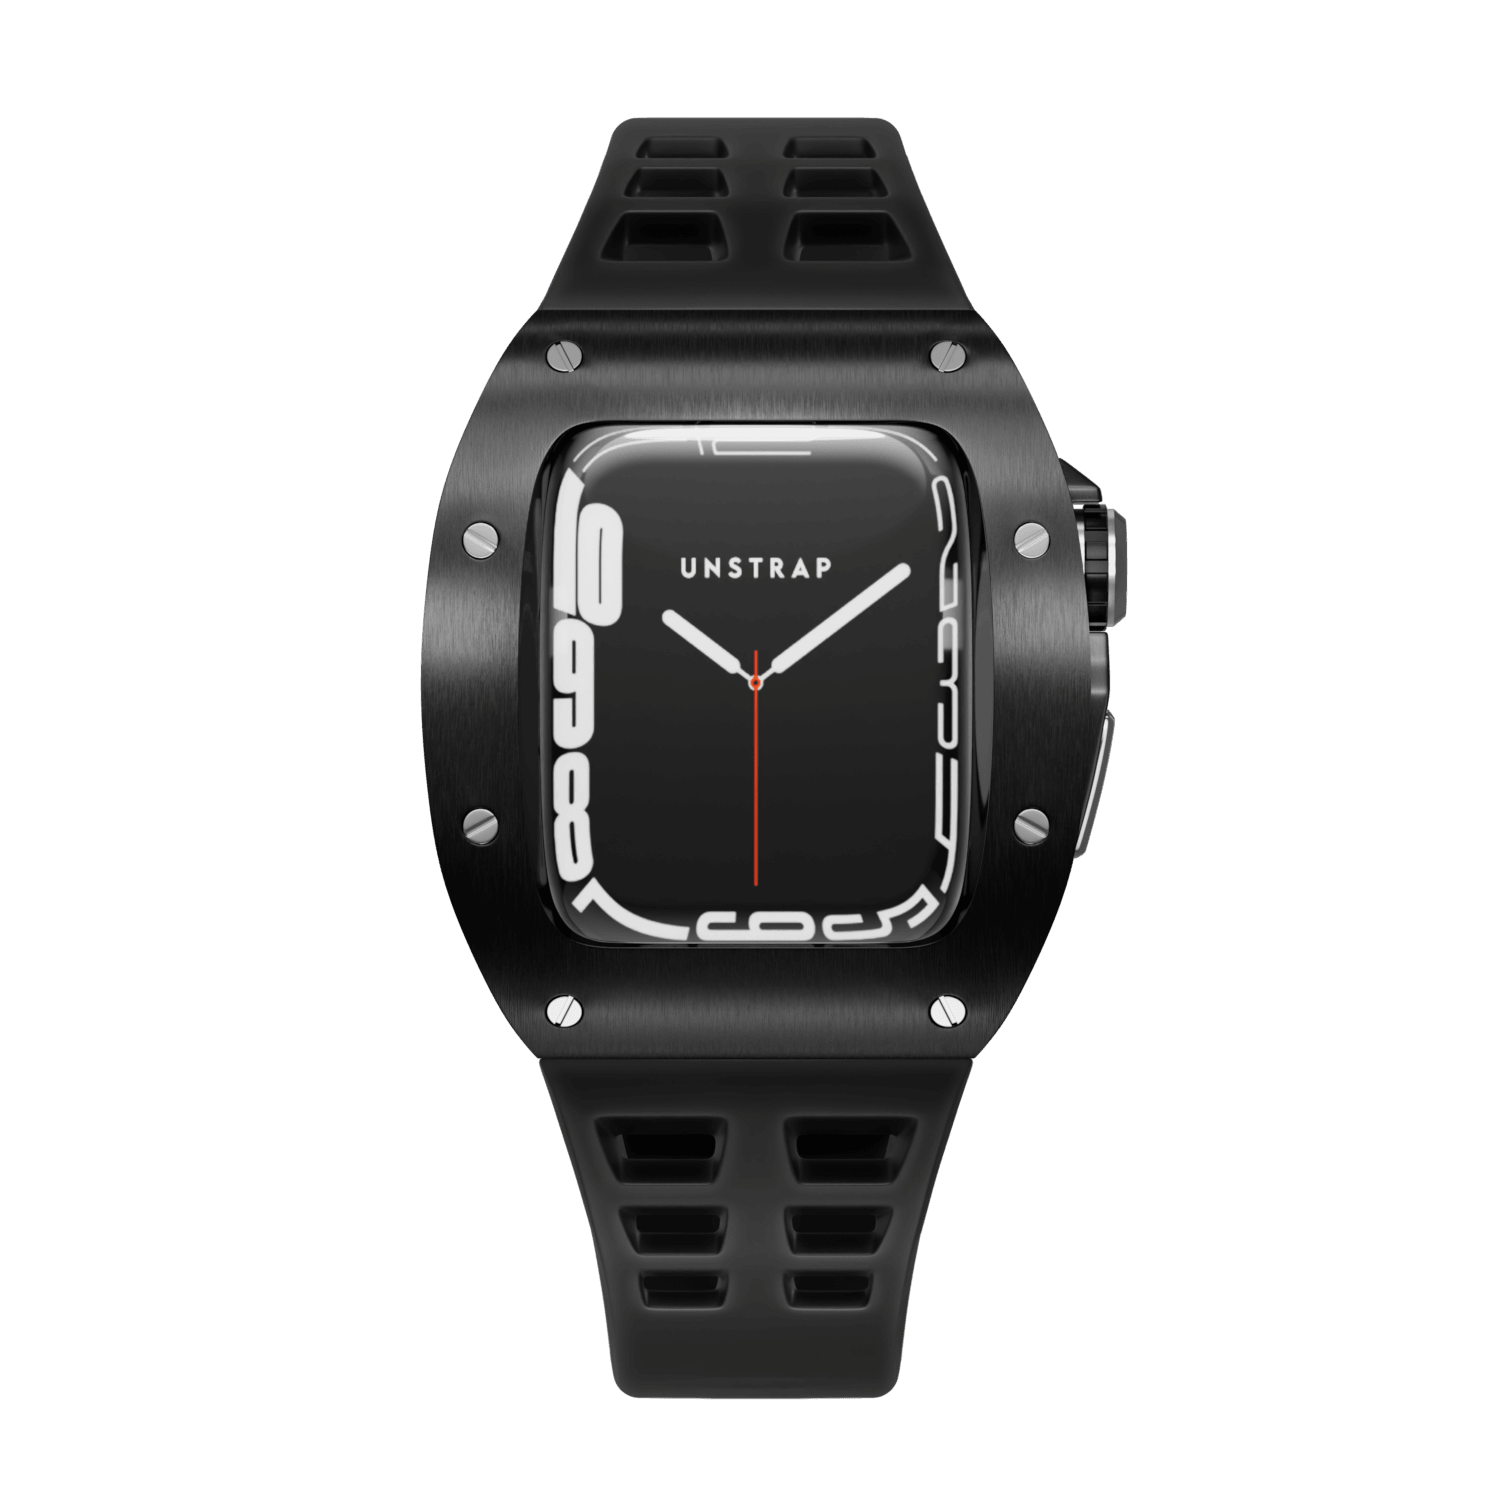 Apple Watch 錶殼黑色 MC - 橡膠